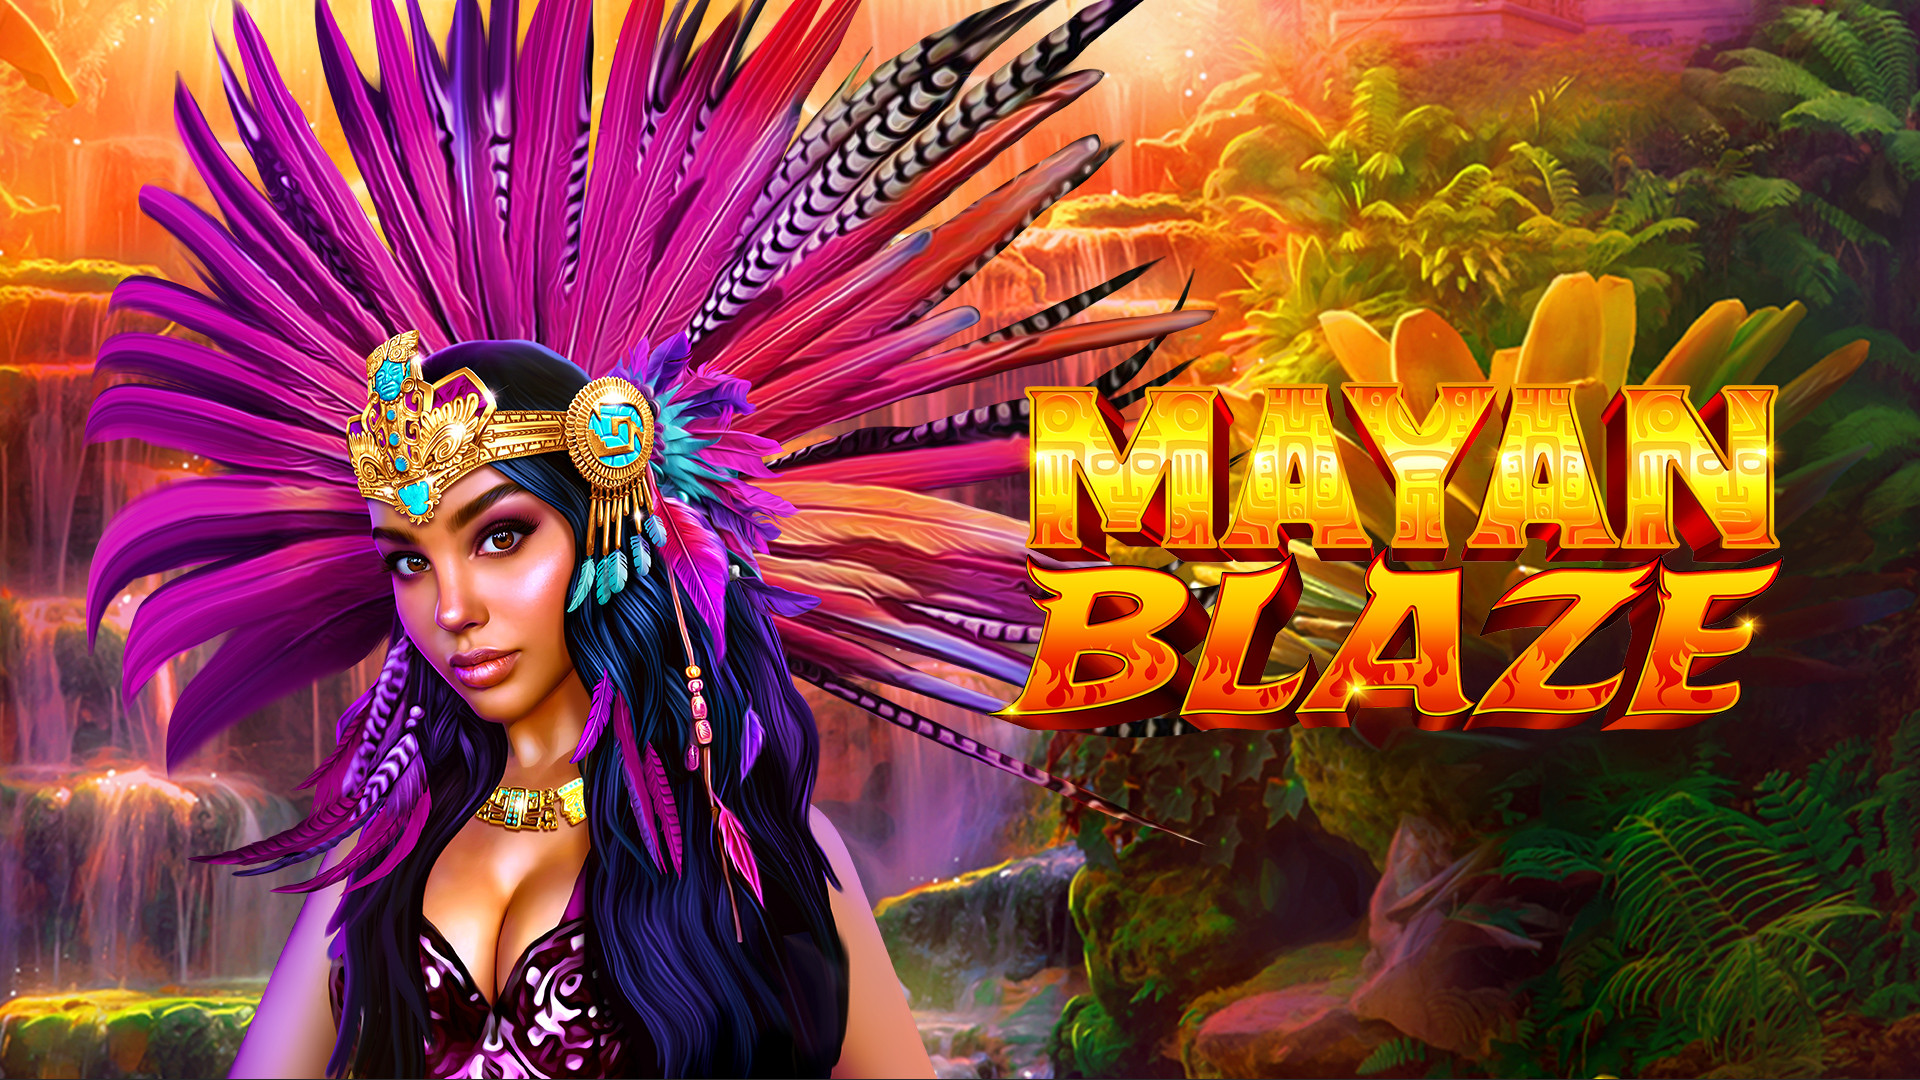 Mayan Blaze